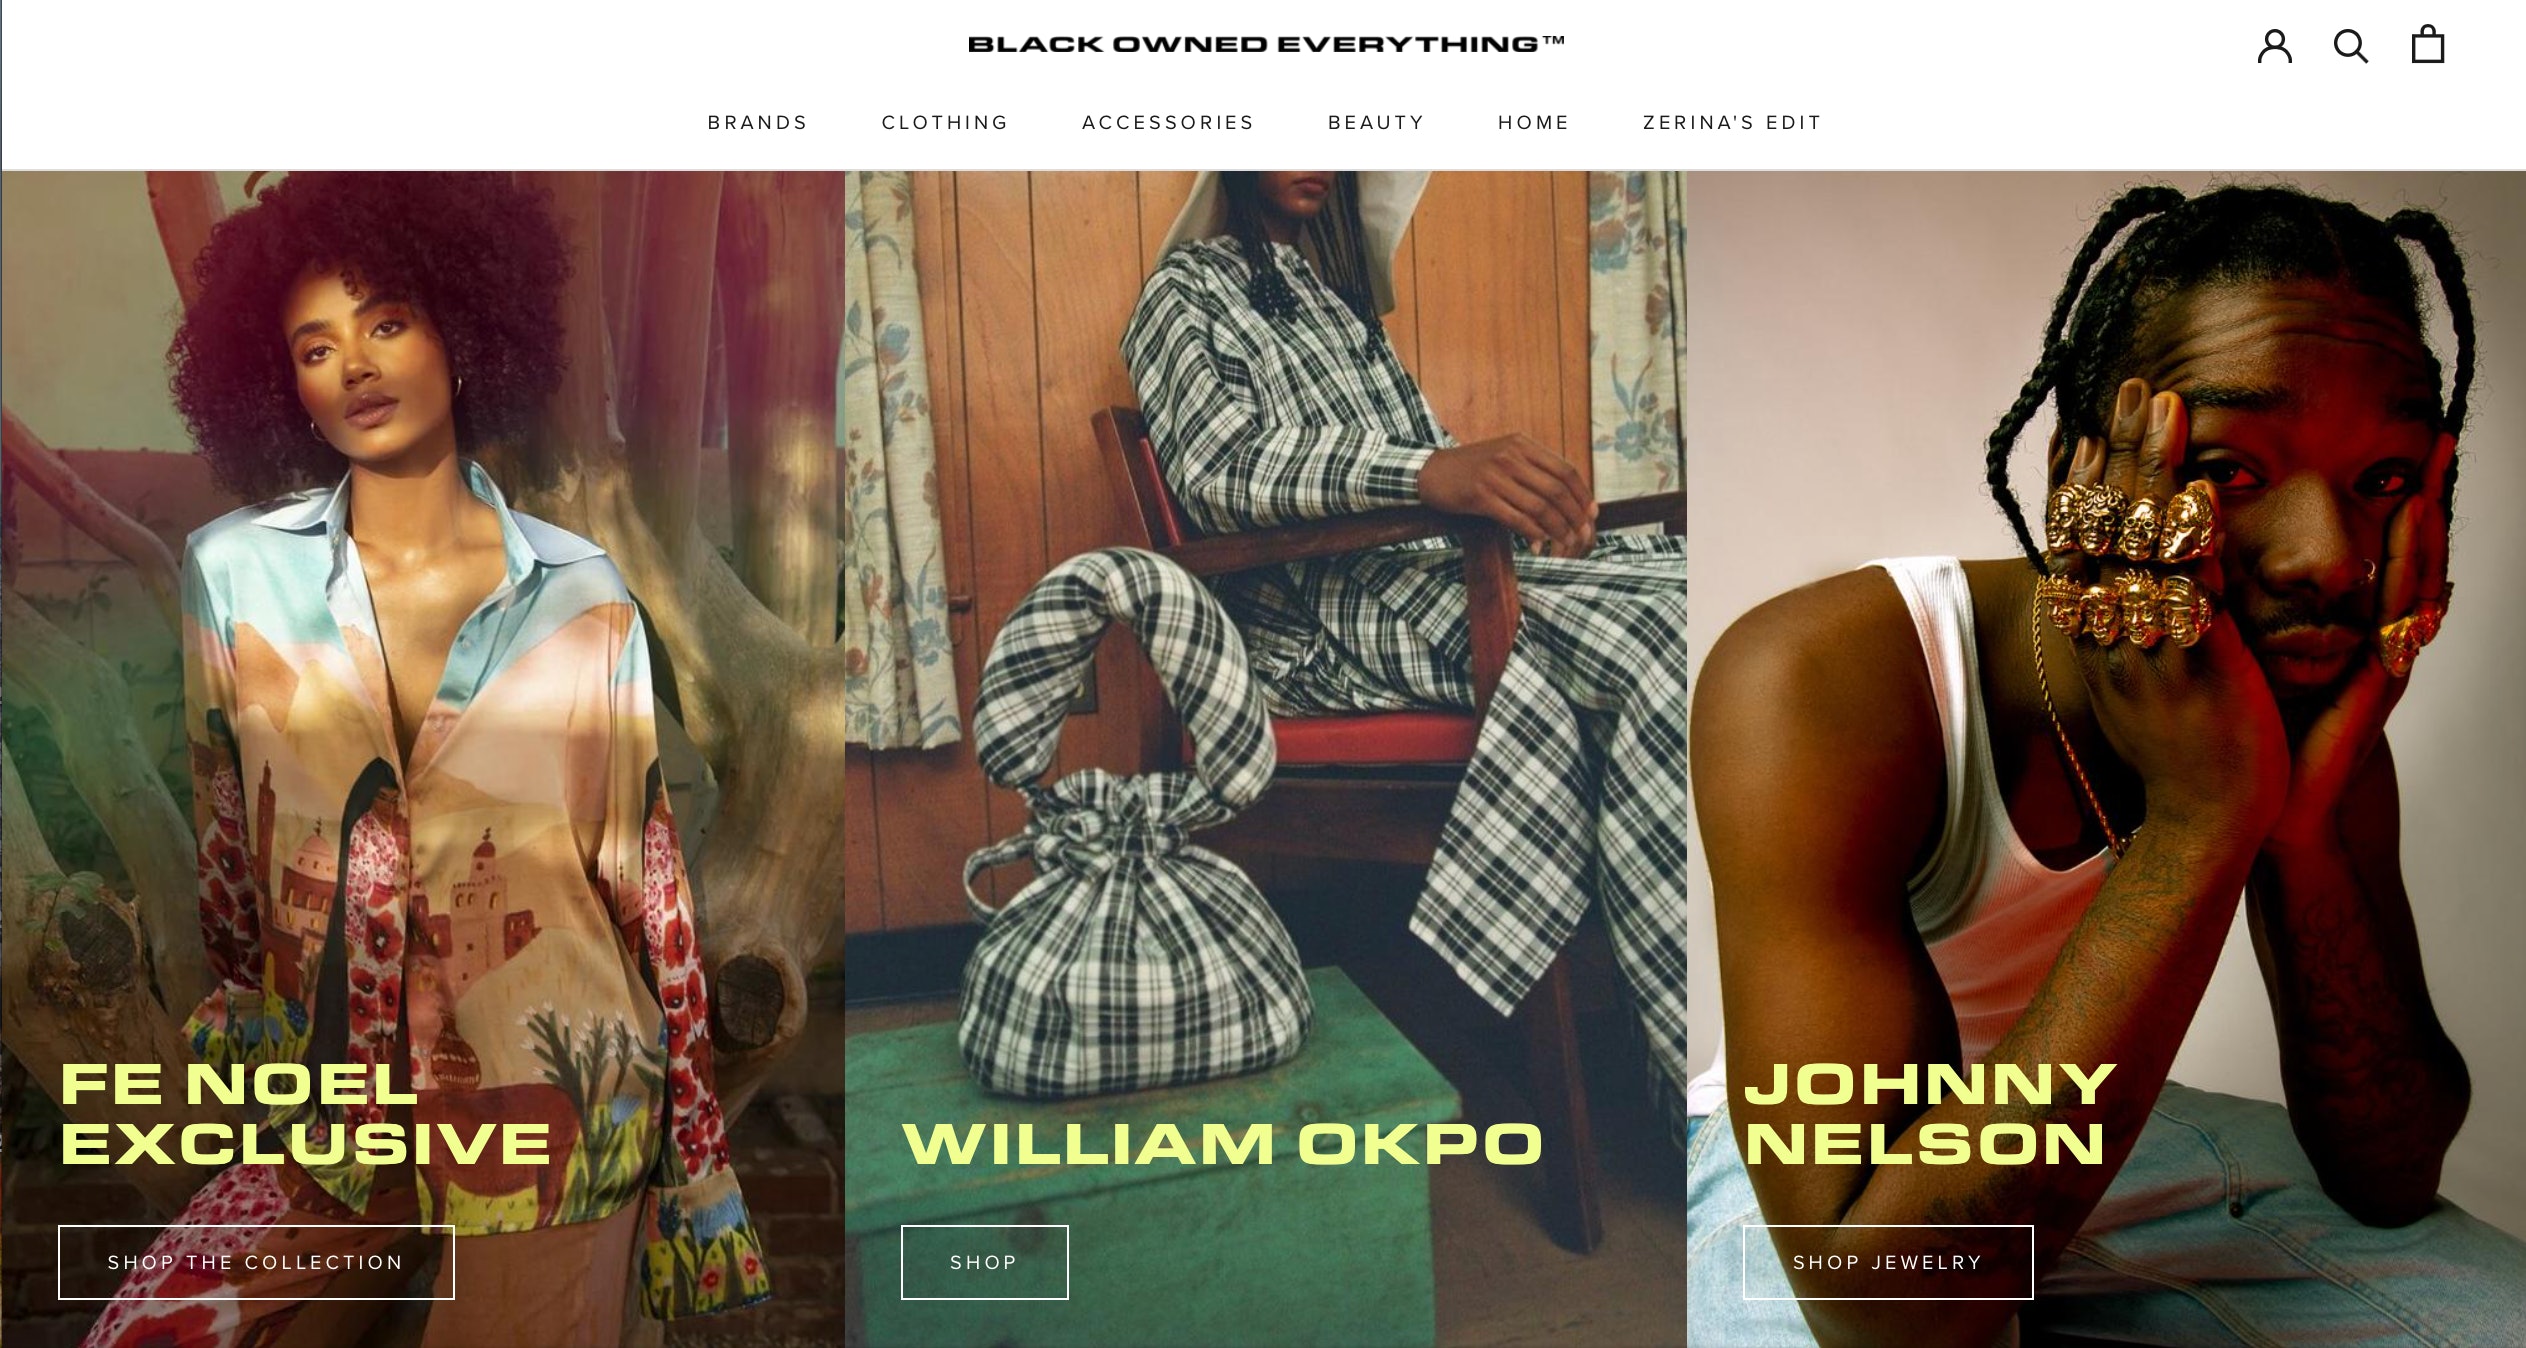 Цифровая витрина Зерины Акерс выделяет бренды, принадлежащие чернокожим